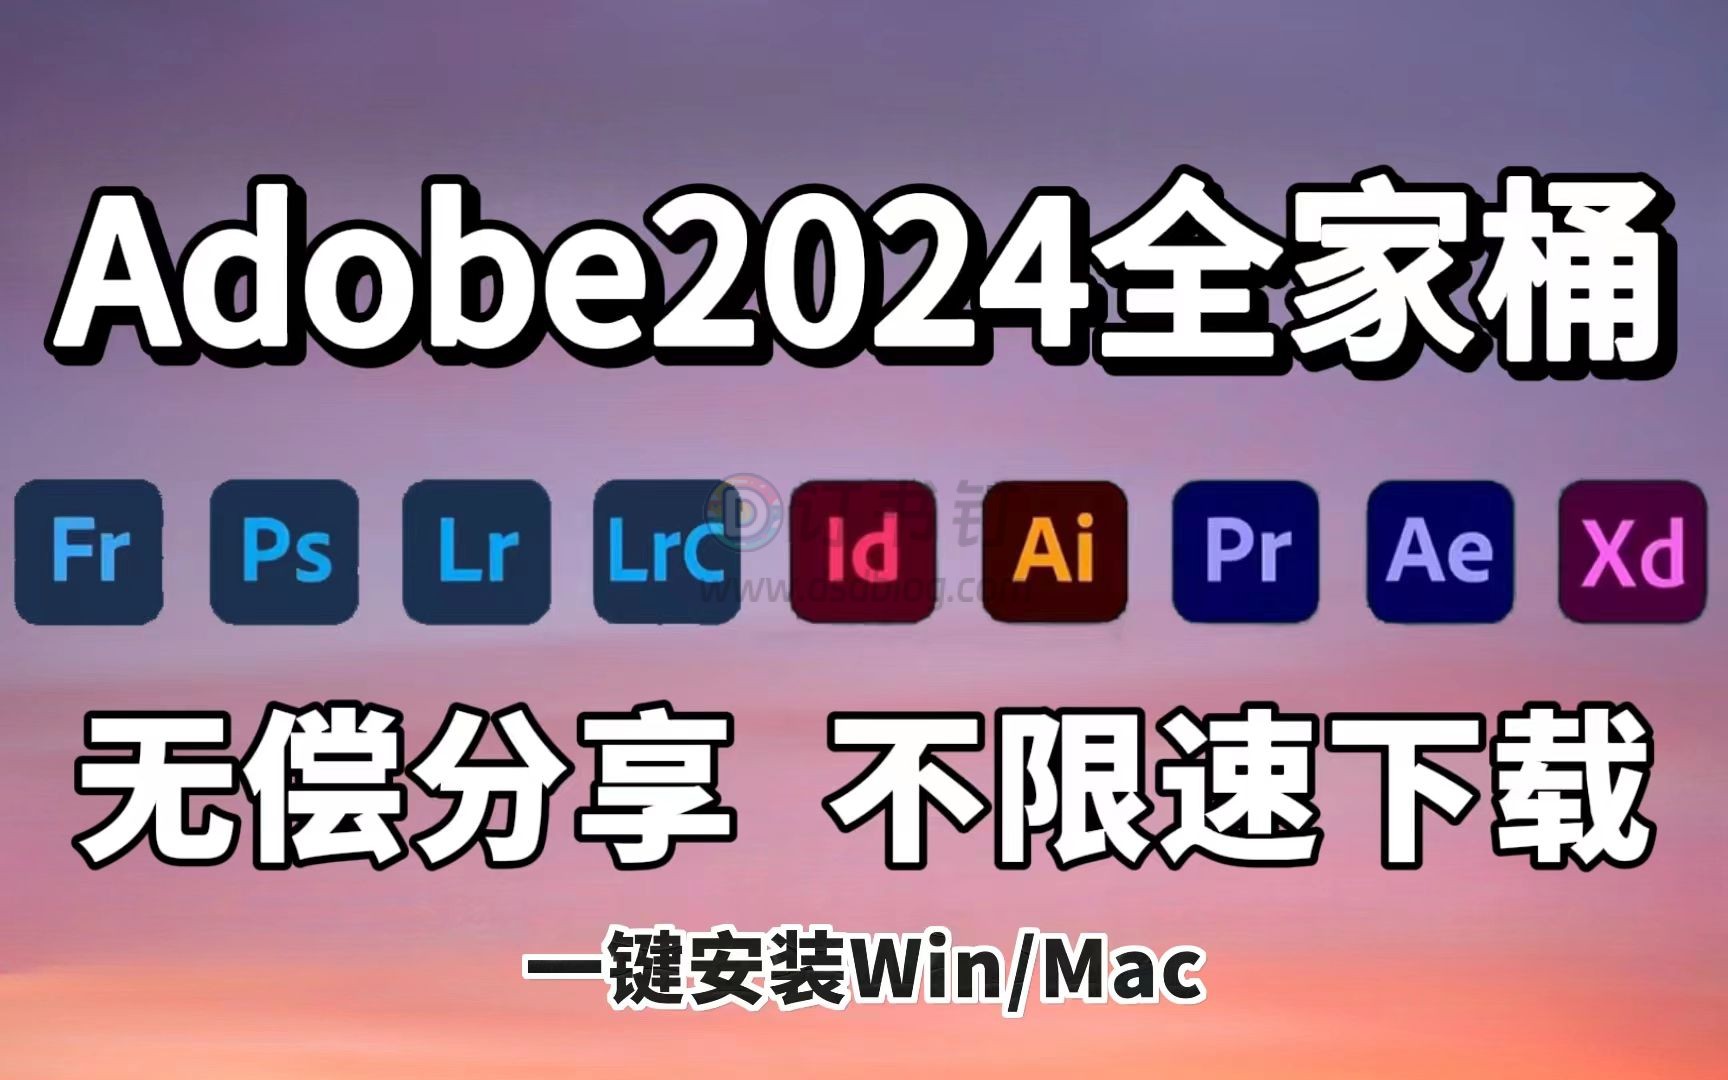 【Adobe 2024 全家桶】最新版 2024 Adobe全家桶来啦！PR AE PS AI 等（附安装包）安装即激活！支持win/mac，免费下载！